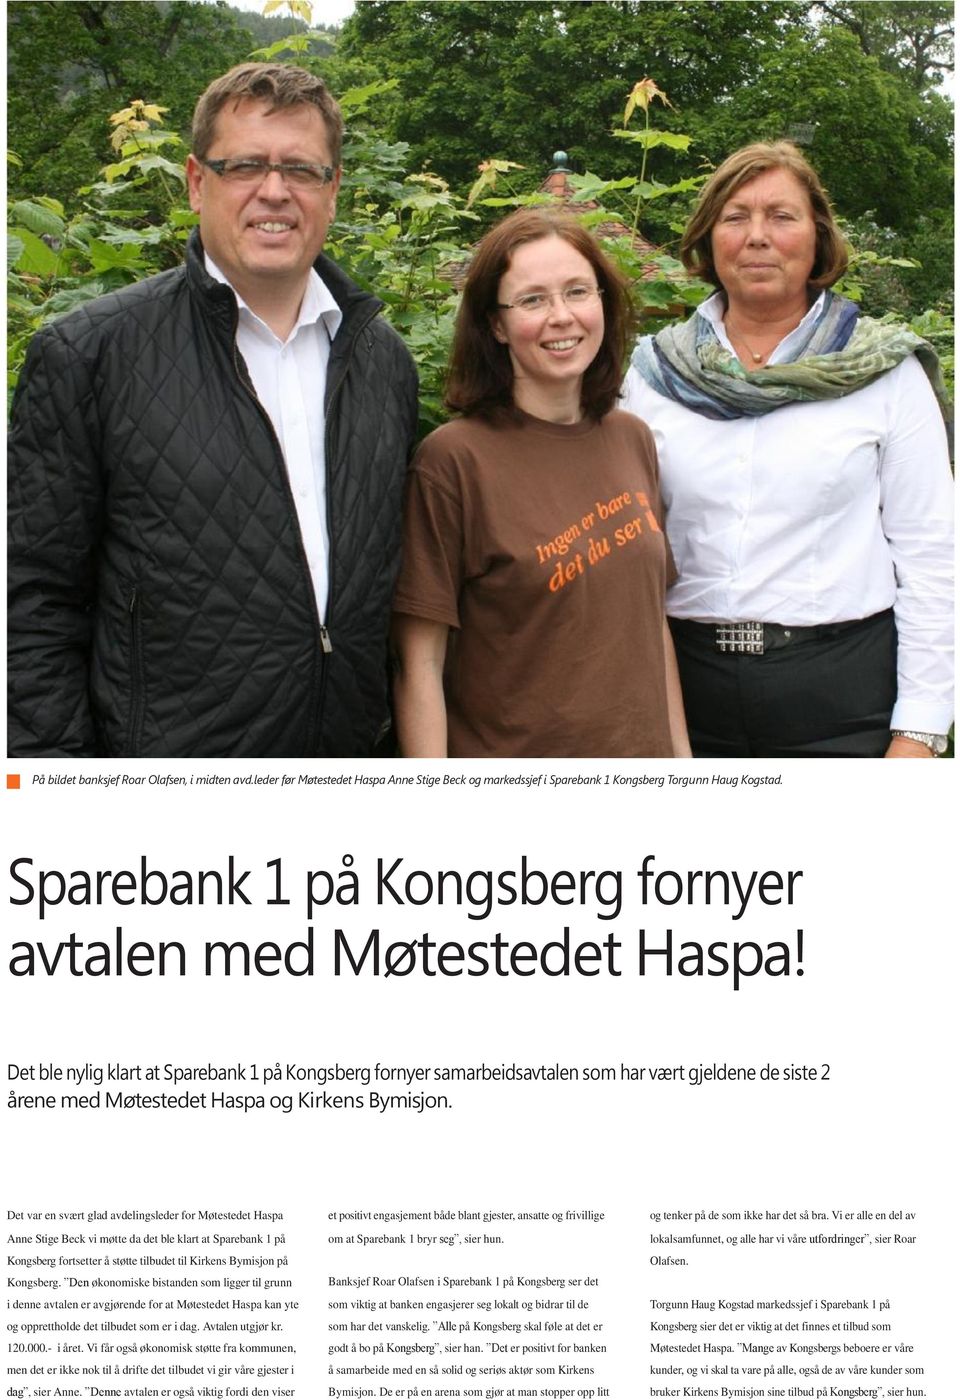 Det ble nylig klart at Sparebank 1 på Kongsberg fornyer samarbeidsavtalen som har vært gjeldene de siste 2 årene med Møtestedet Haspa og Kirkens Bymisjon.